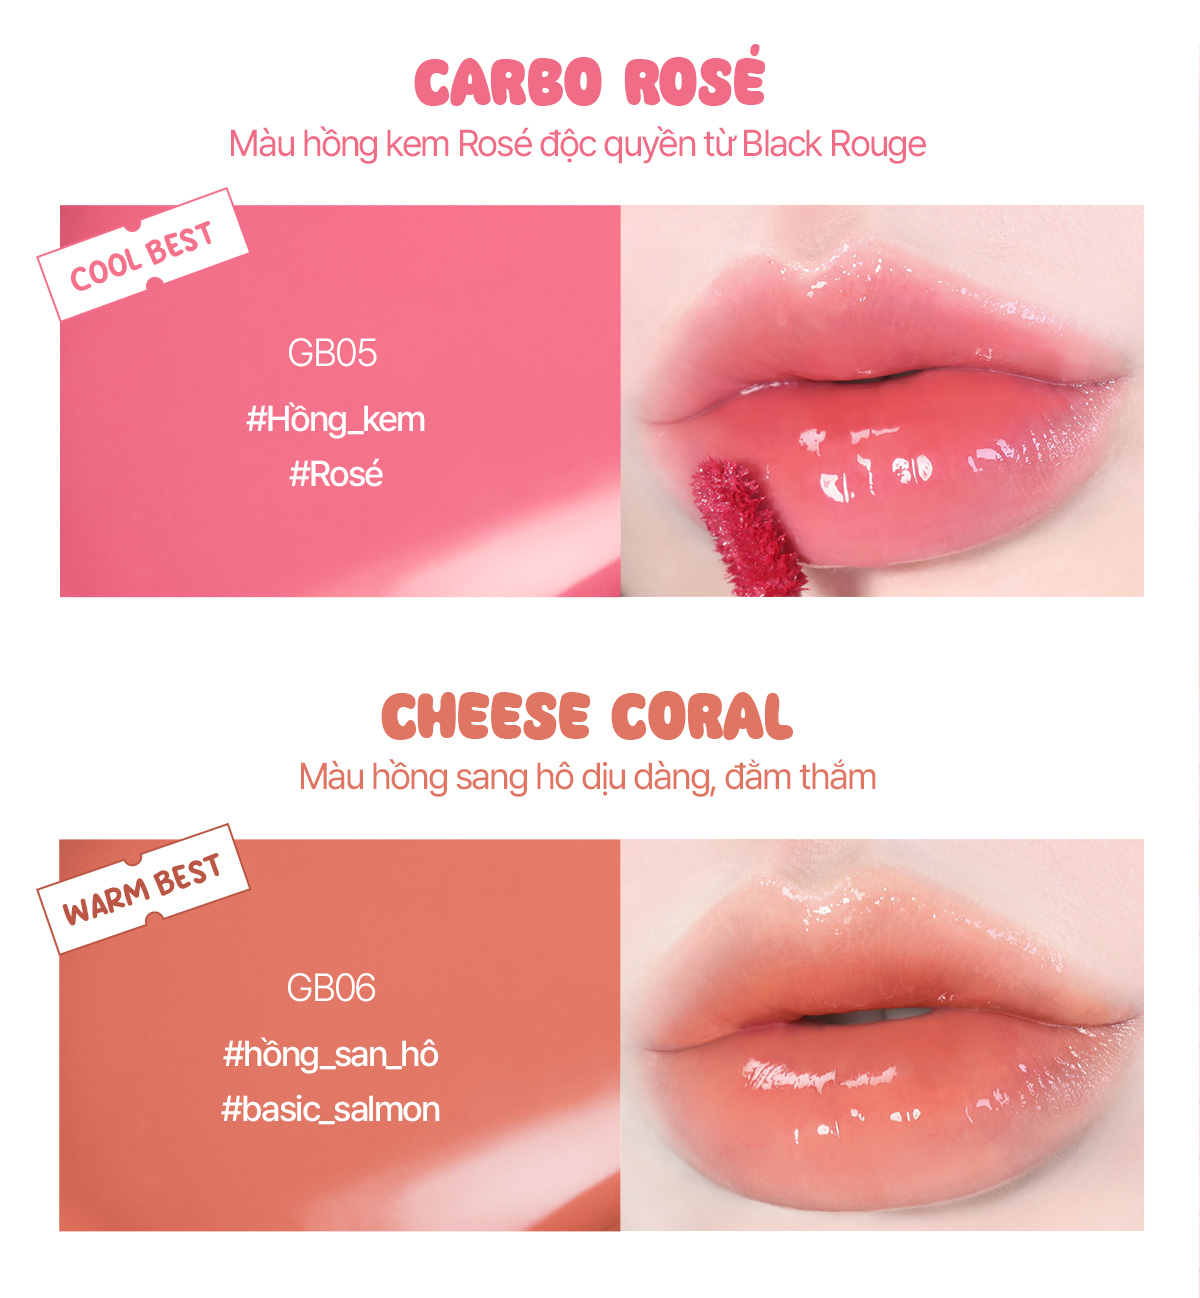 GB05 - Carbo Rosé